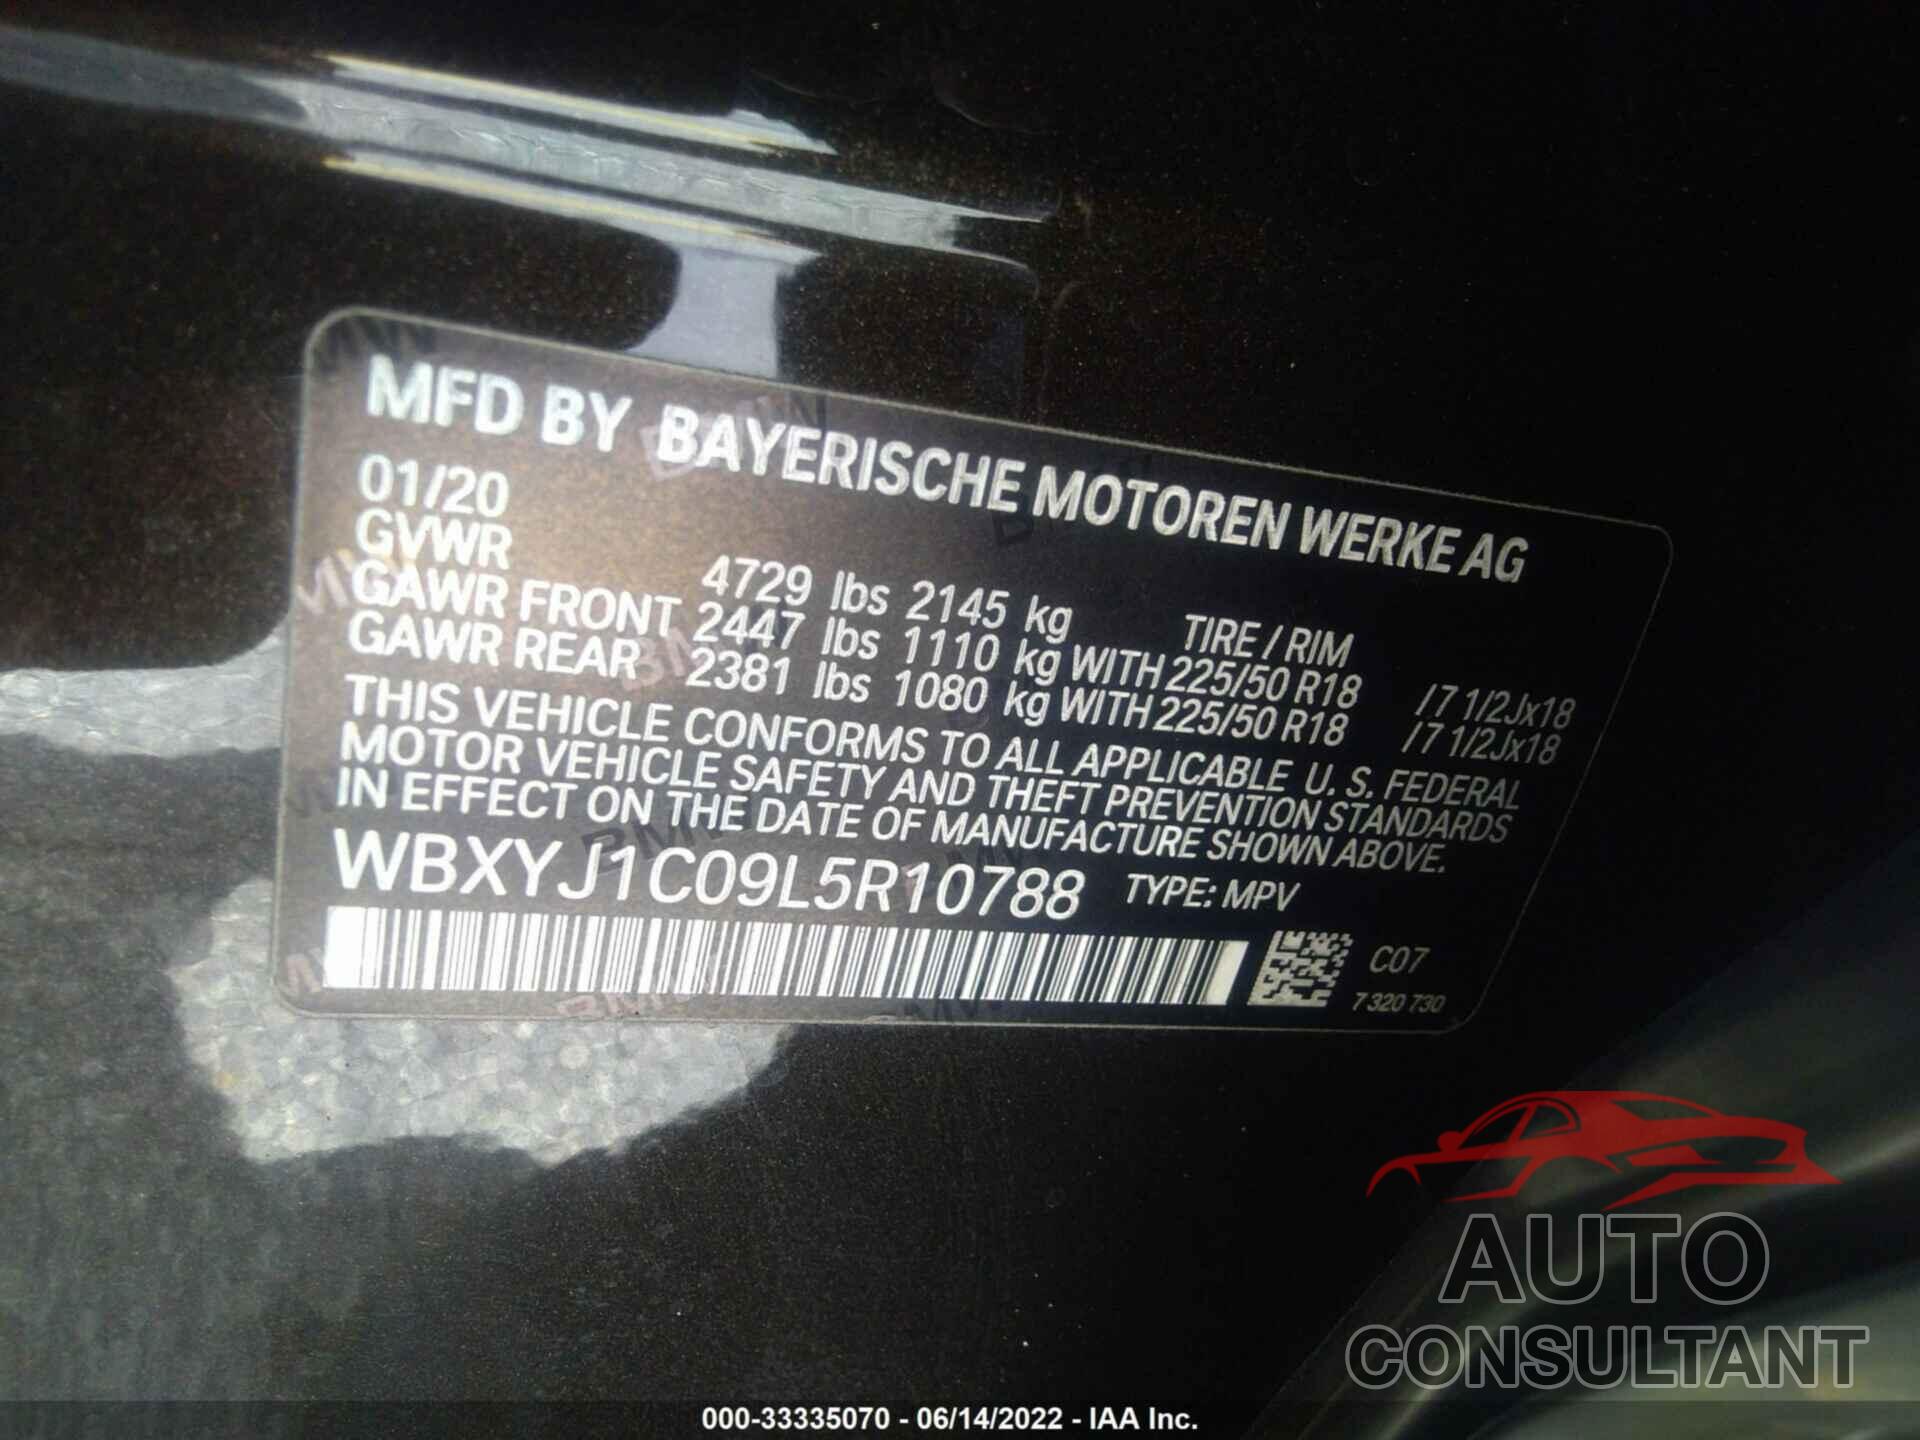 BMW X2 2020 - WBXYJ1C09L5R10788